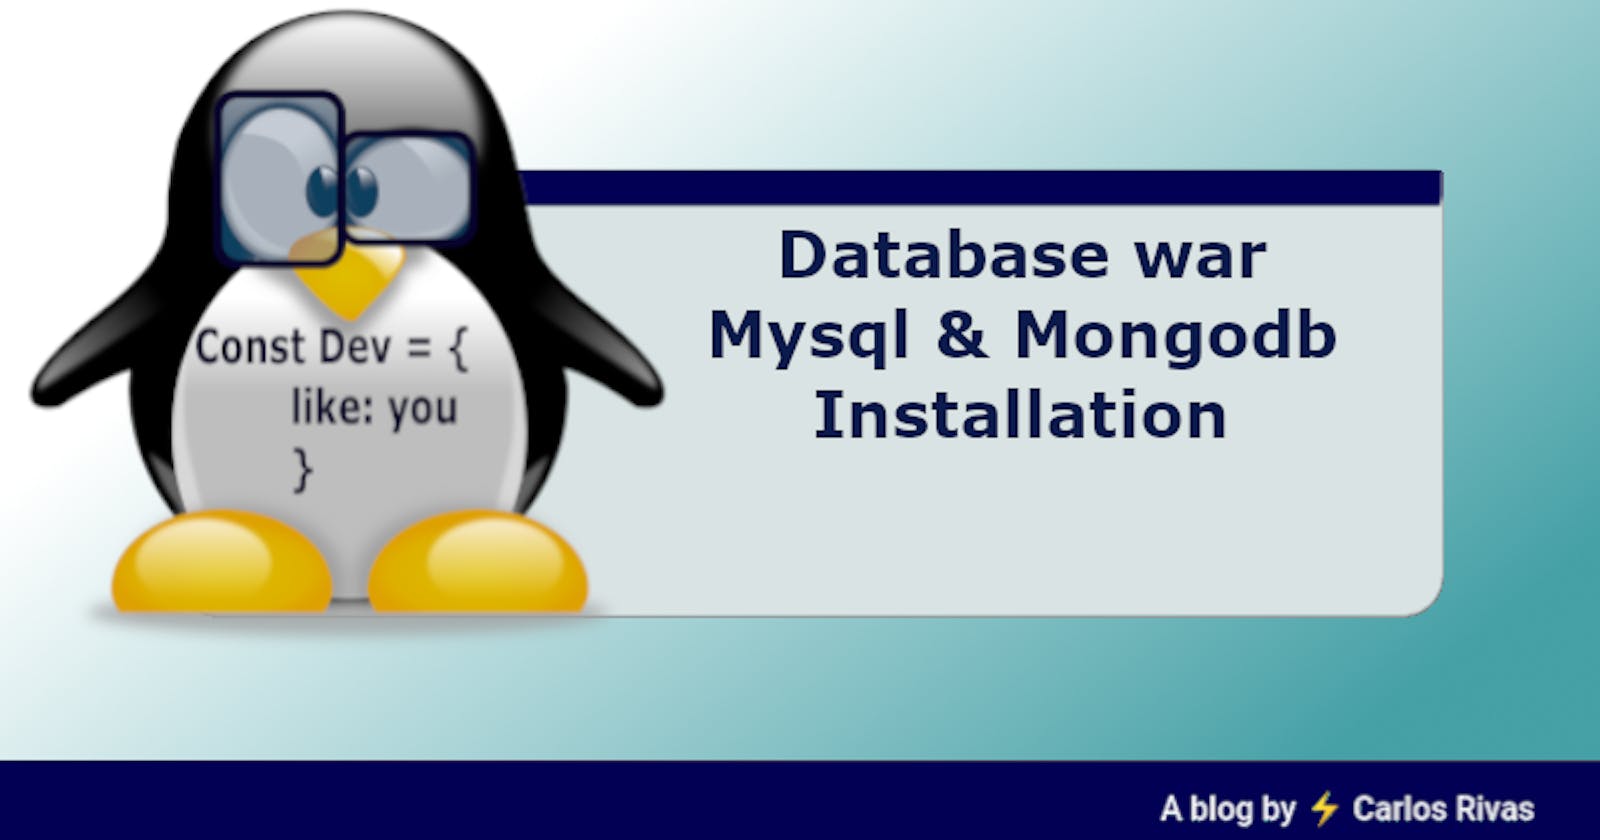 Database war
Mysql & Mongodb
Installation